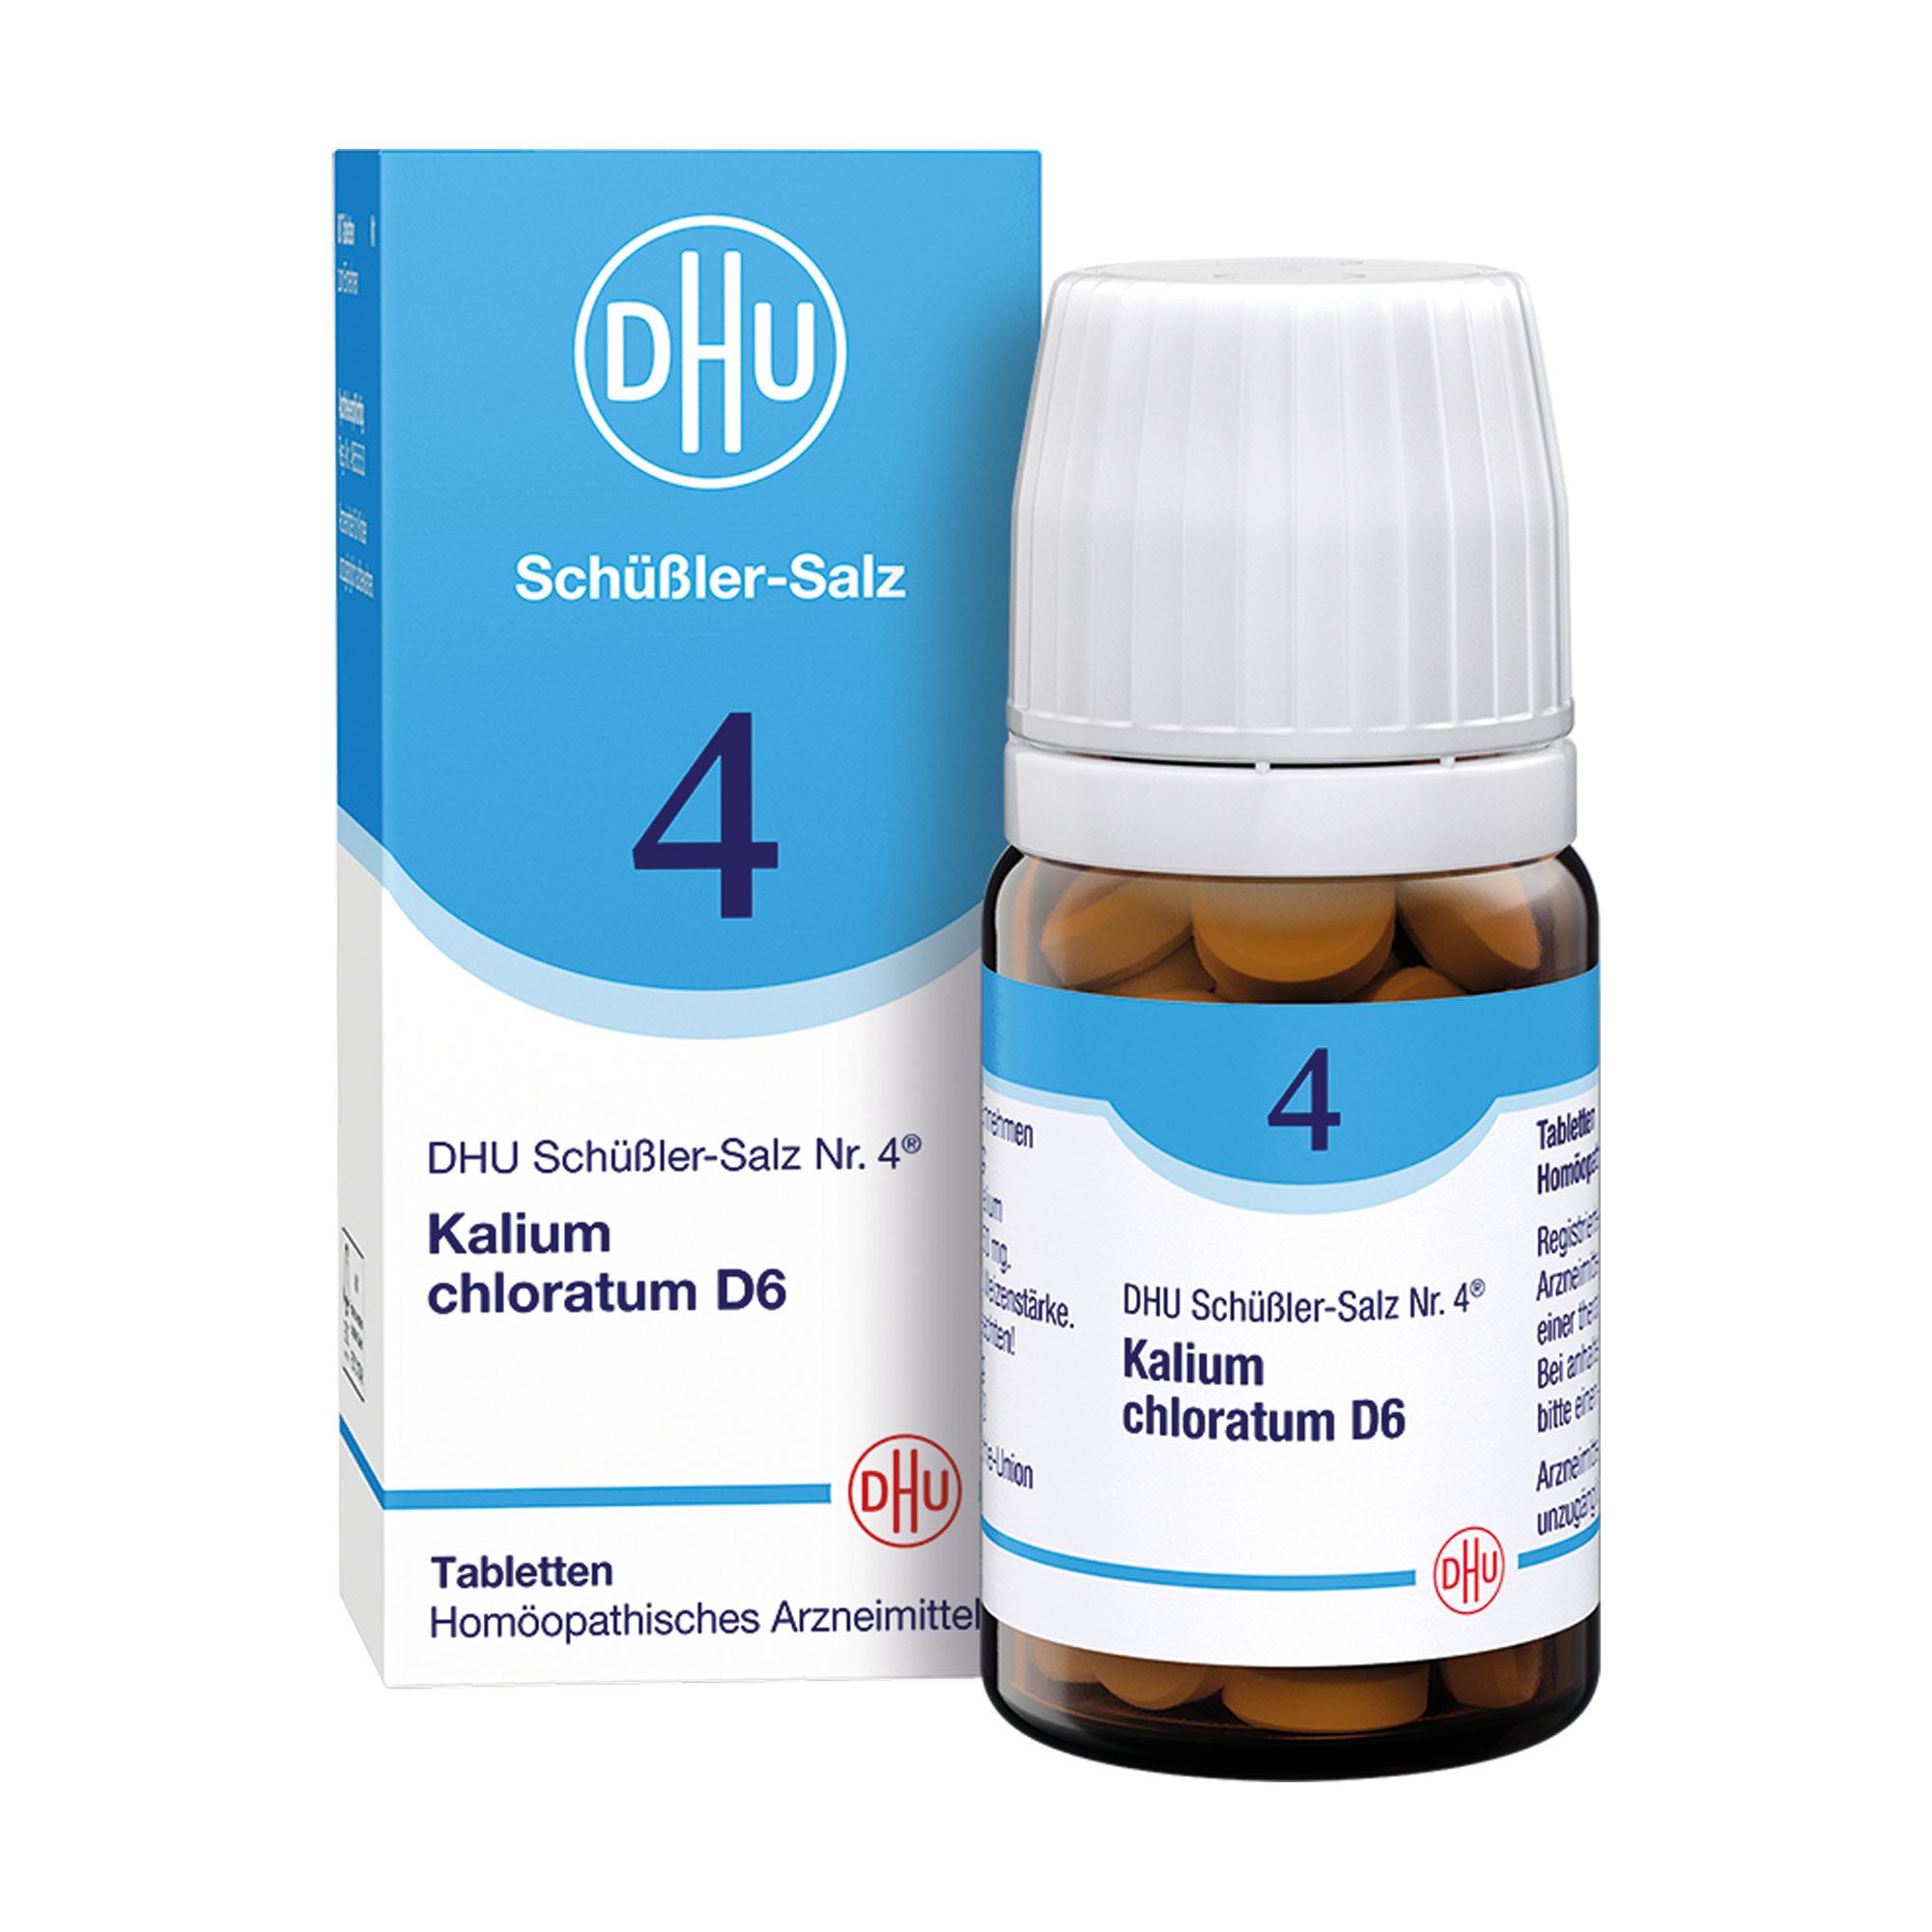 Homöopathisches Arzneimittel mit Kalium chloratum Trit. D6.